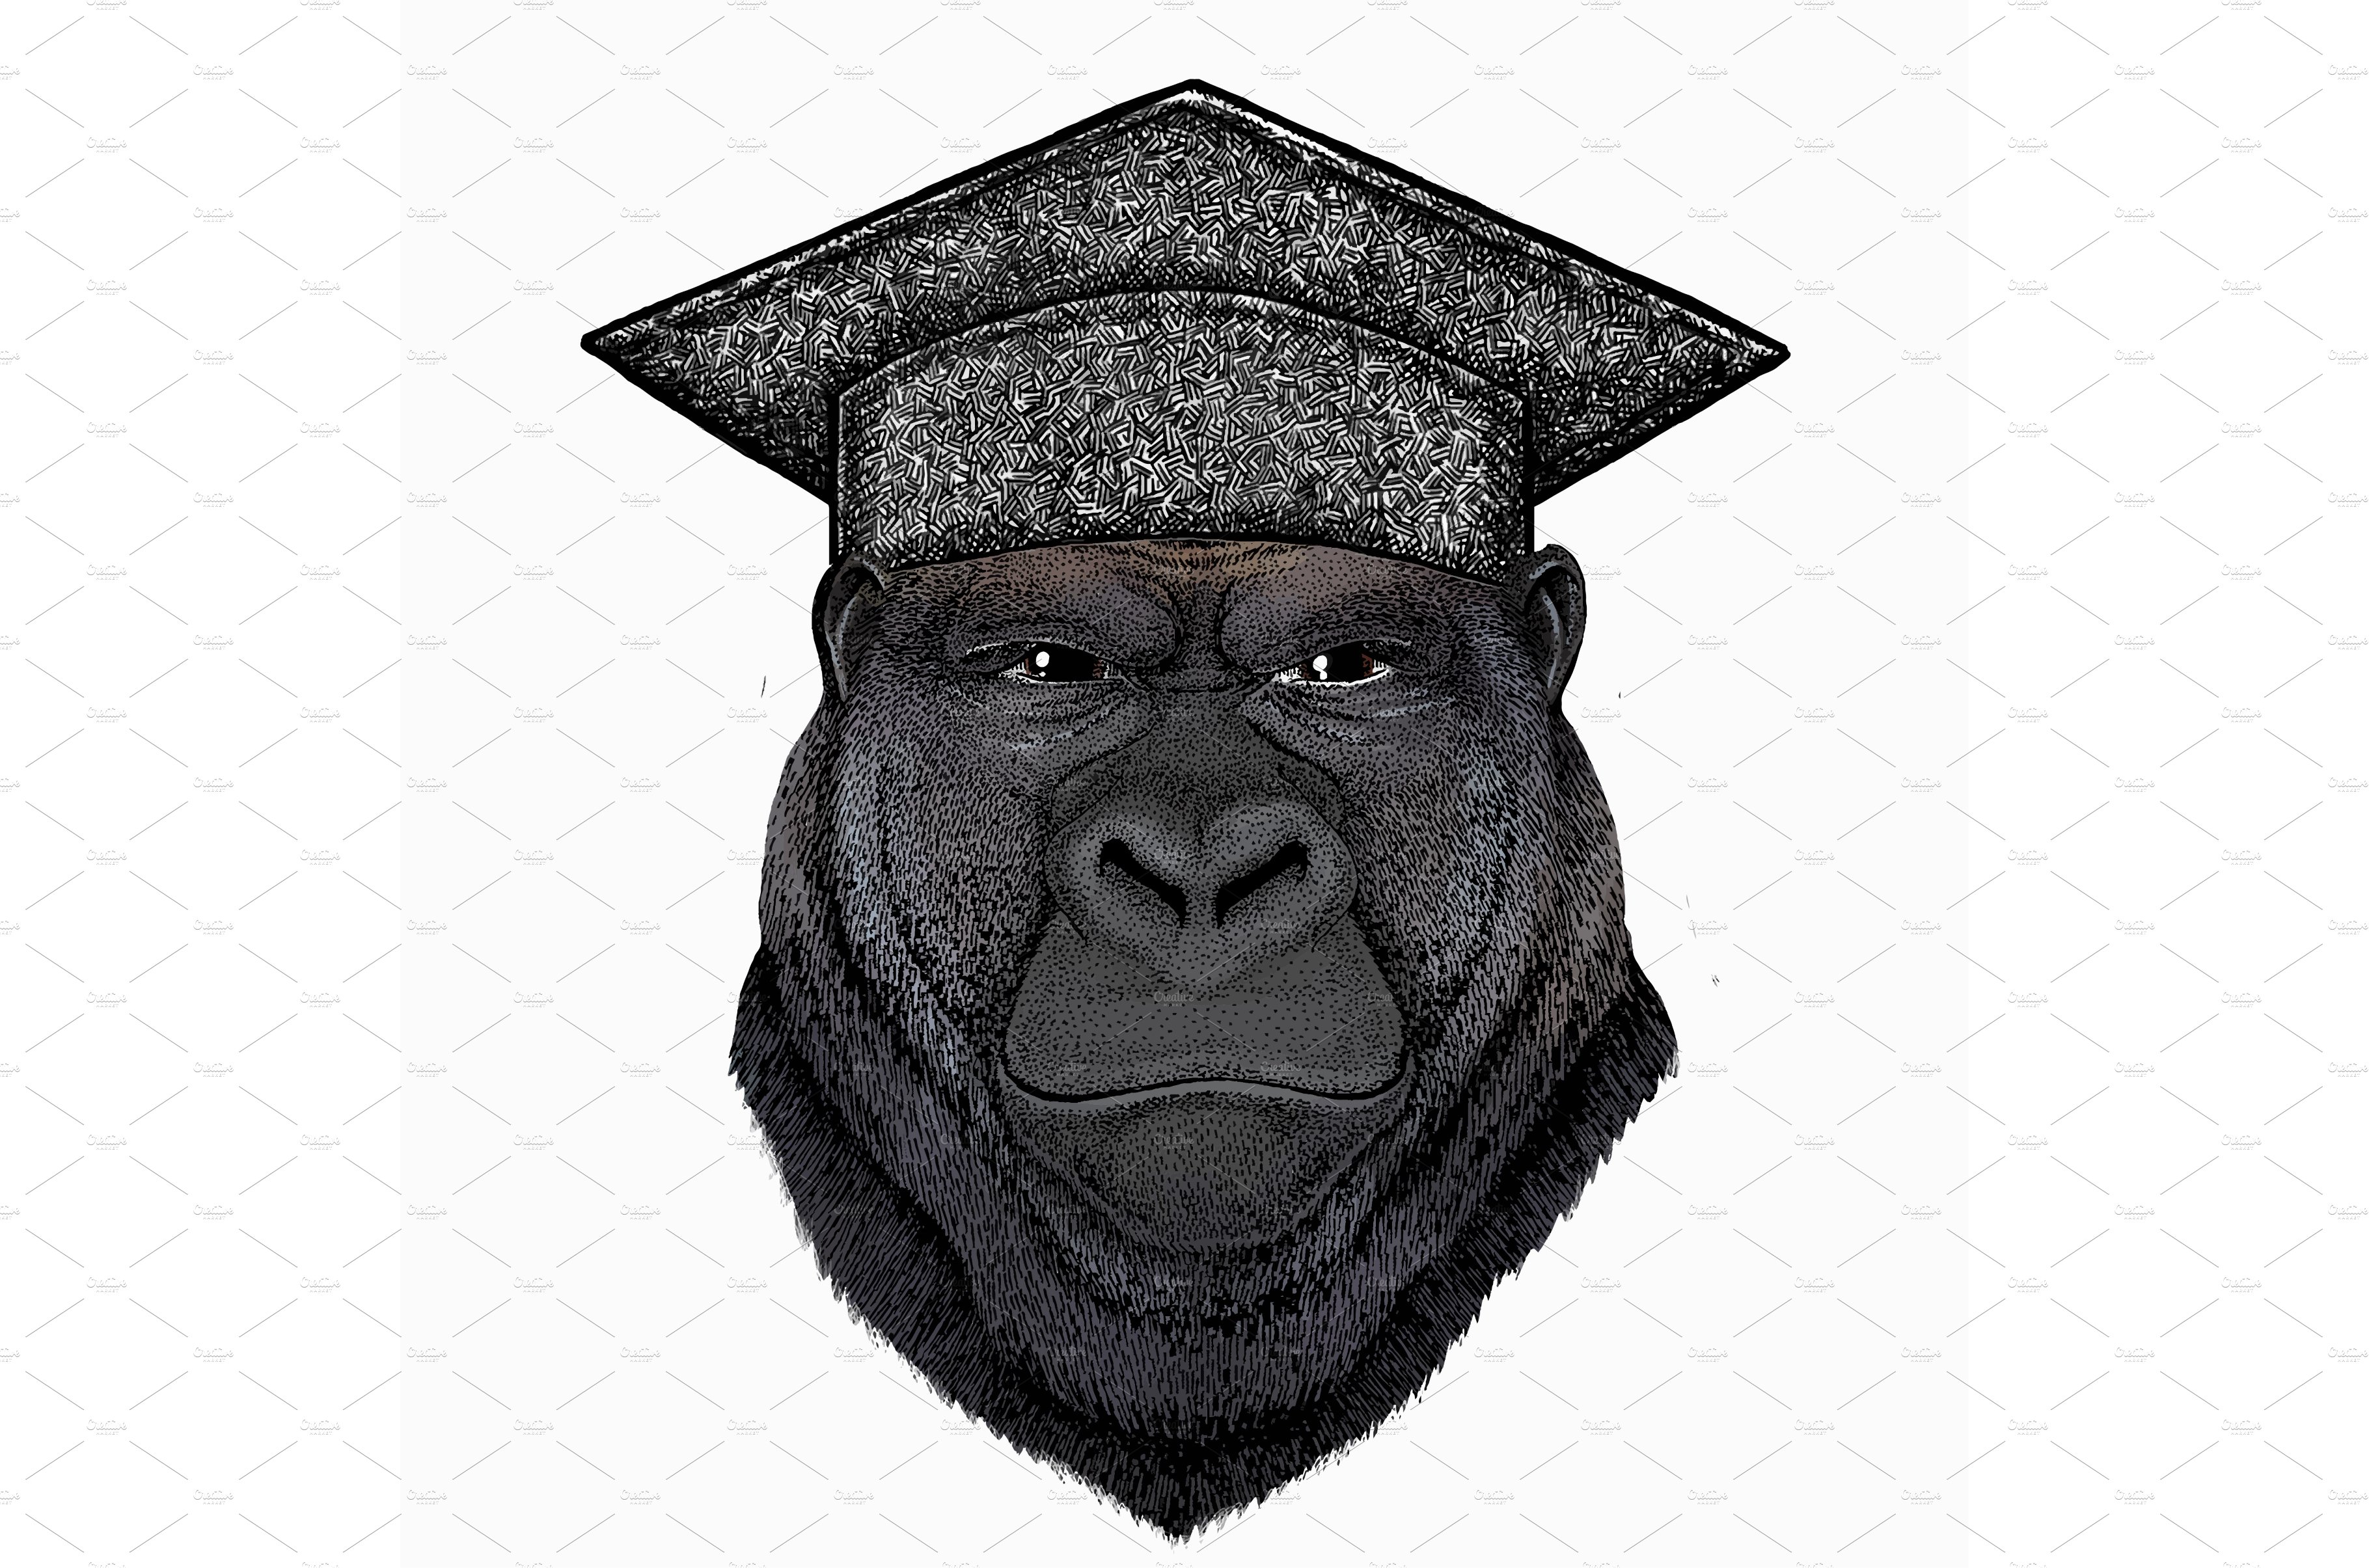 Gorilla head. Square academic cap cover image.